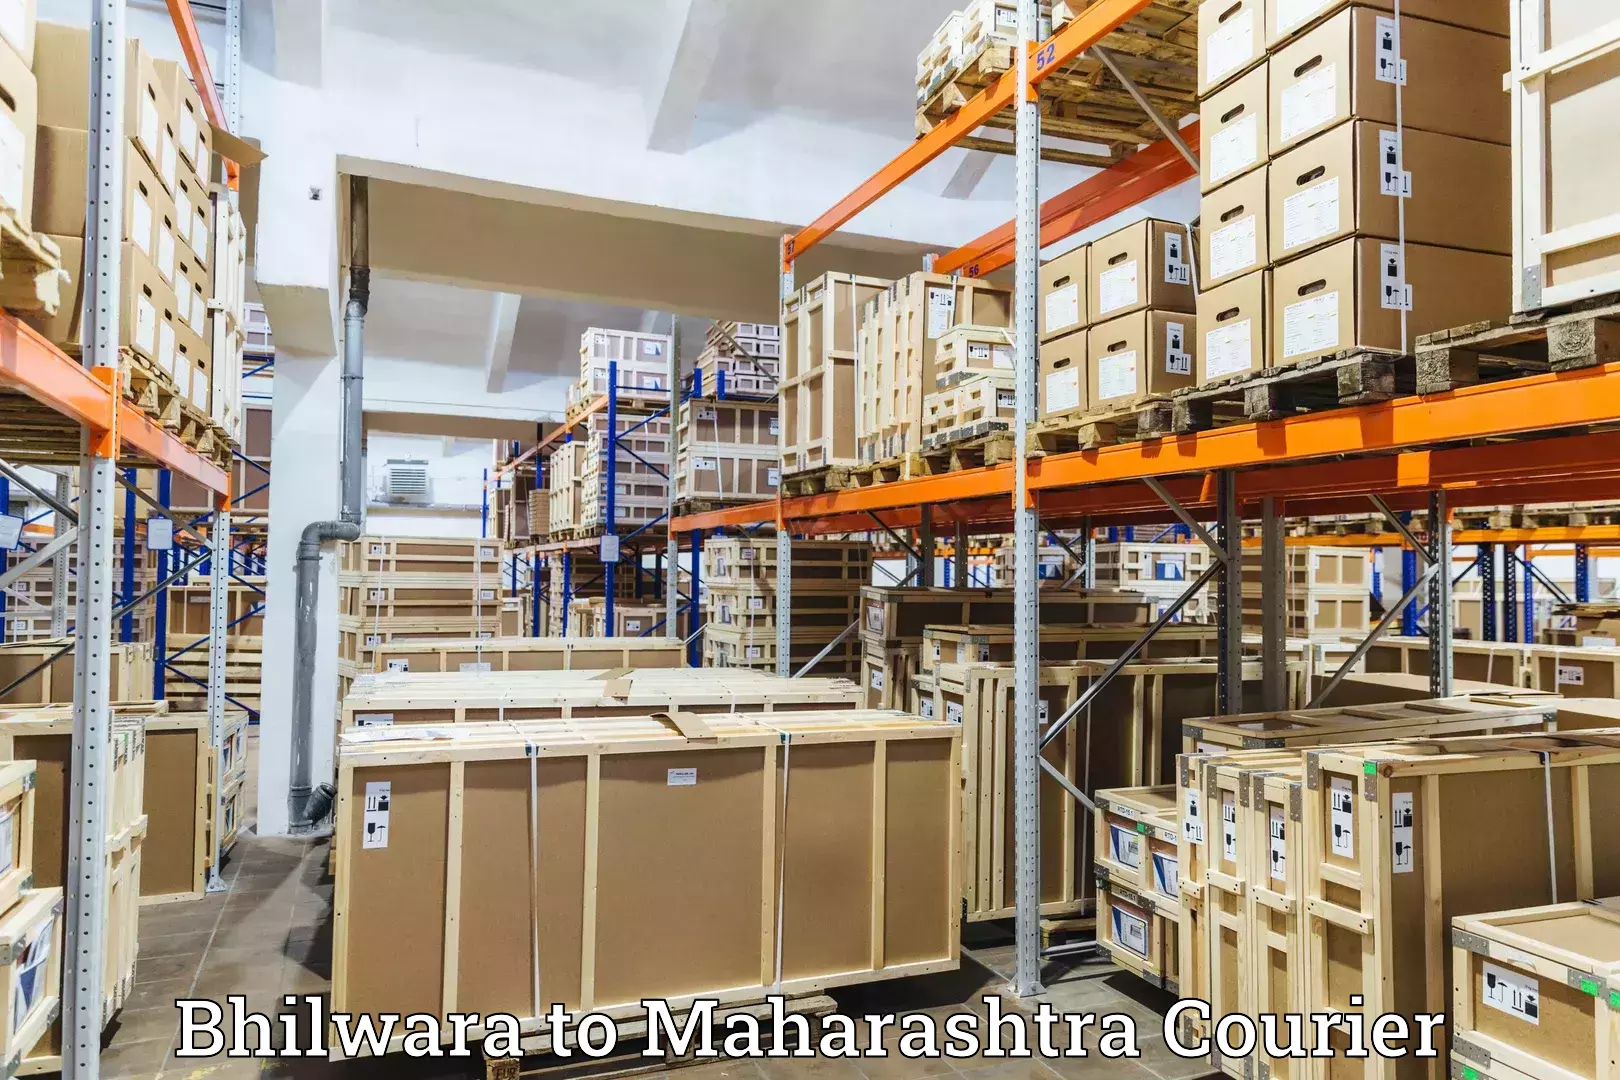 Flexible parcel services Bhilwara to Andheri